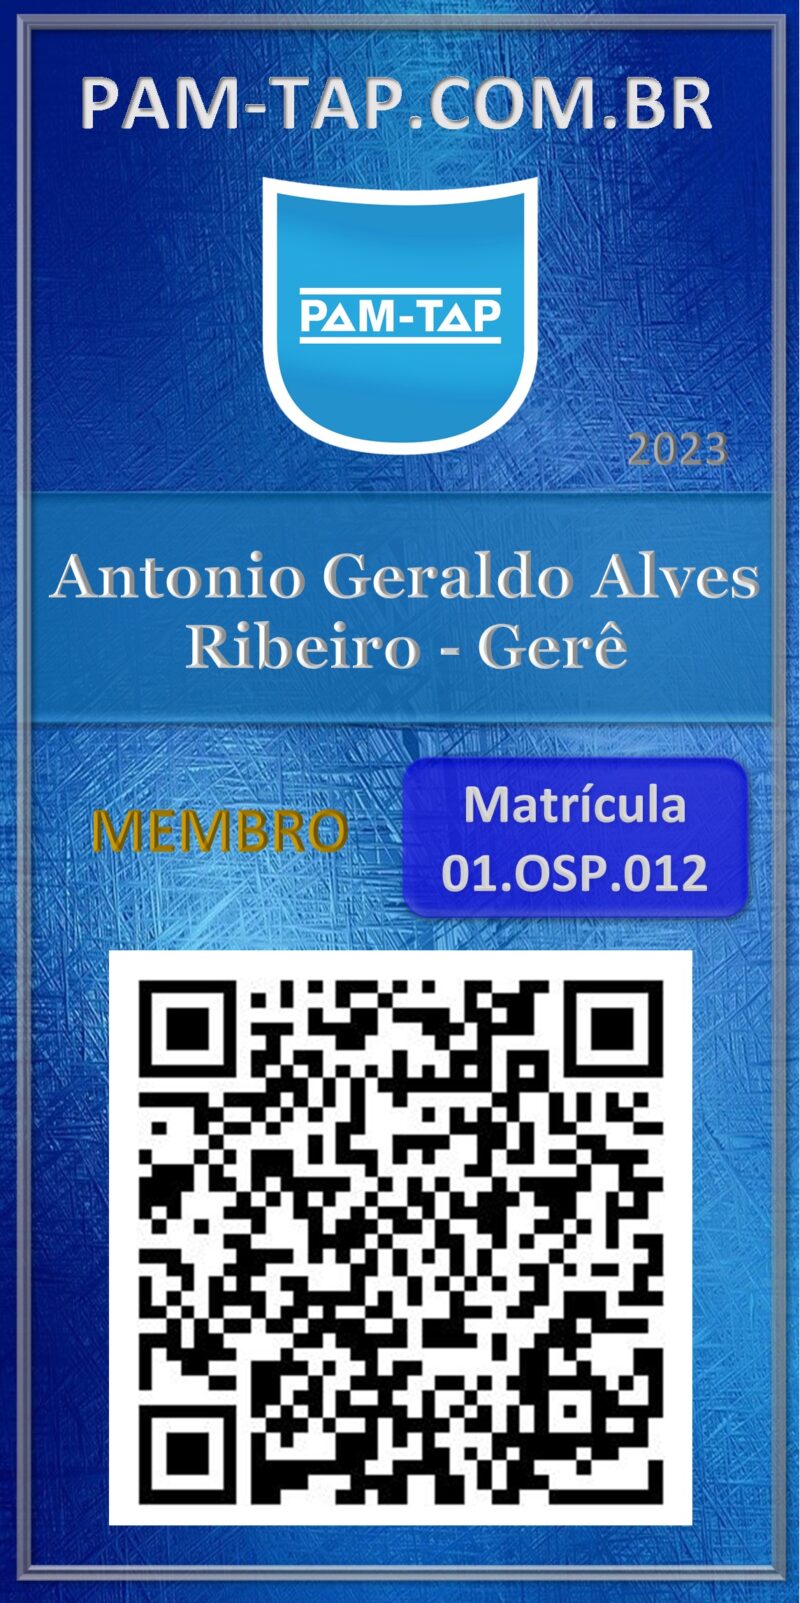 Antonio Geraldo Alves Ribeiro – Gerê-Hazmat 2022-Membro